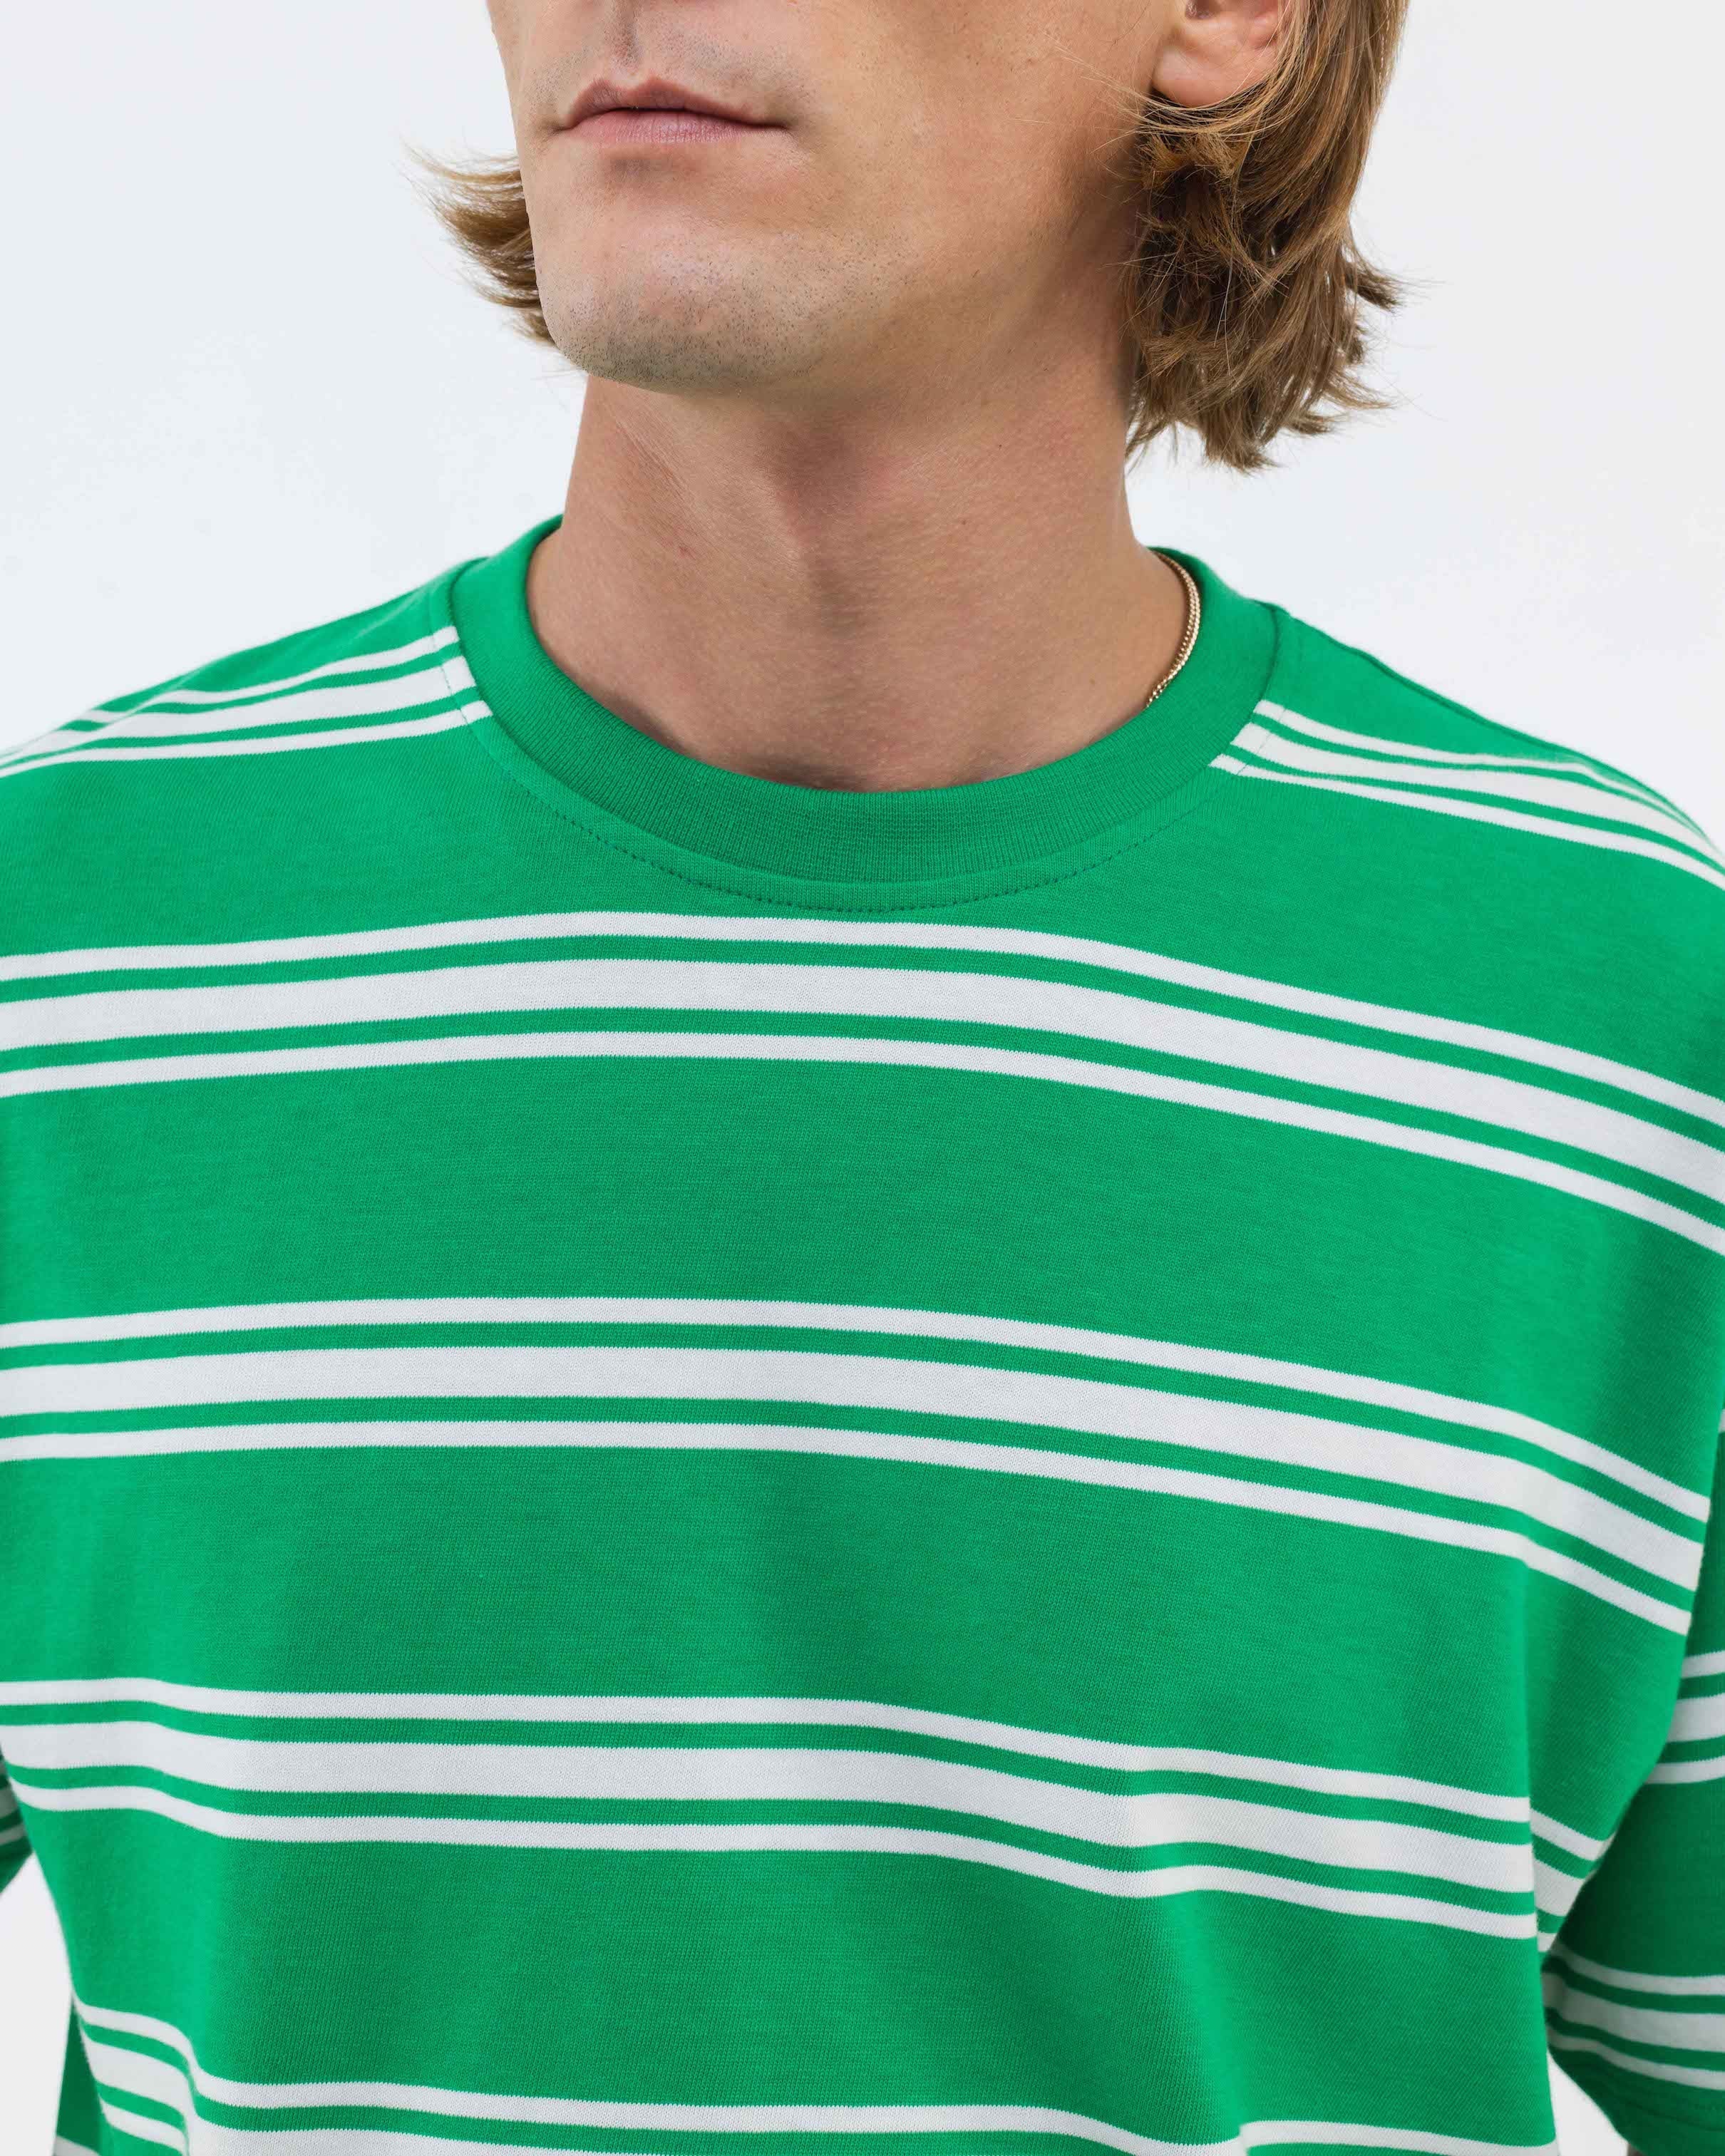 Castart The Chairs Green Stripe T-shirt